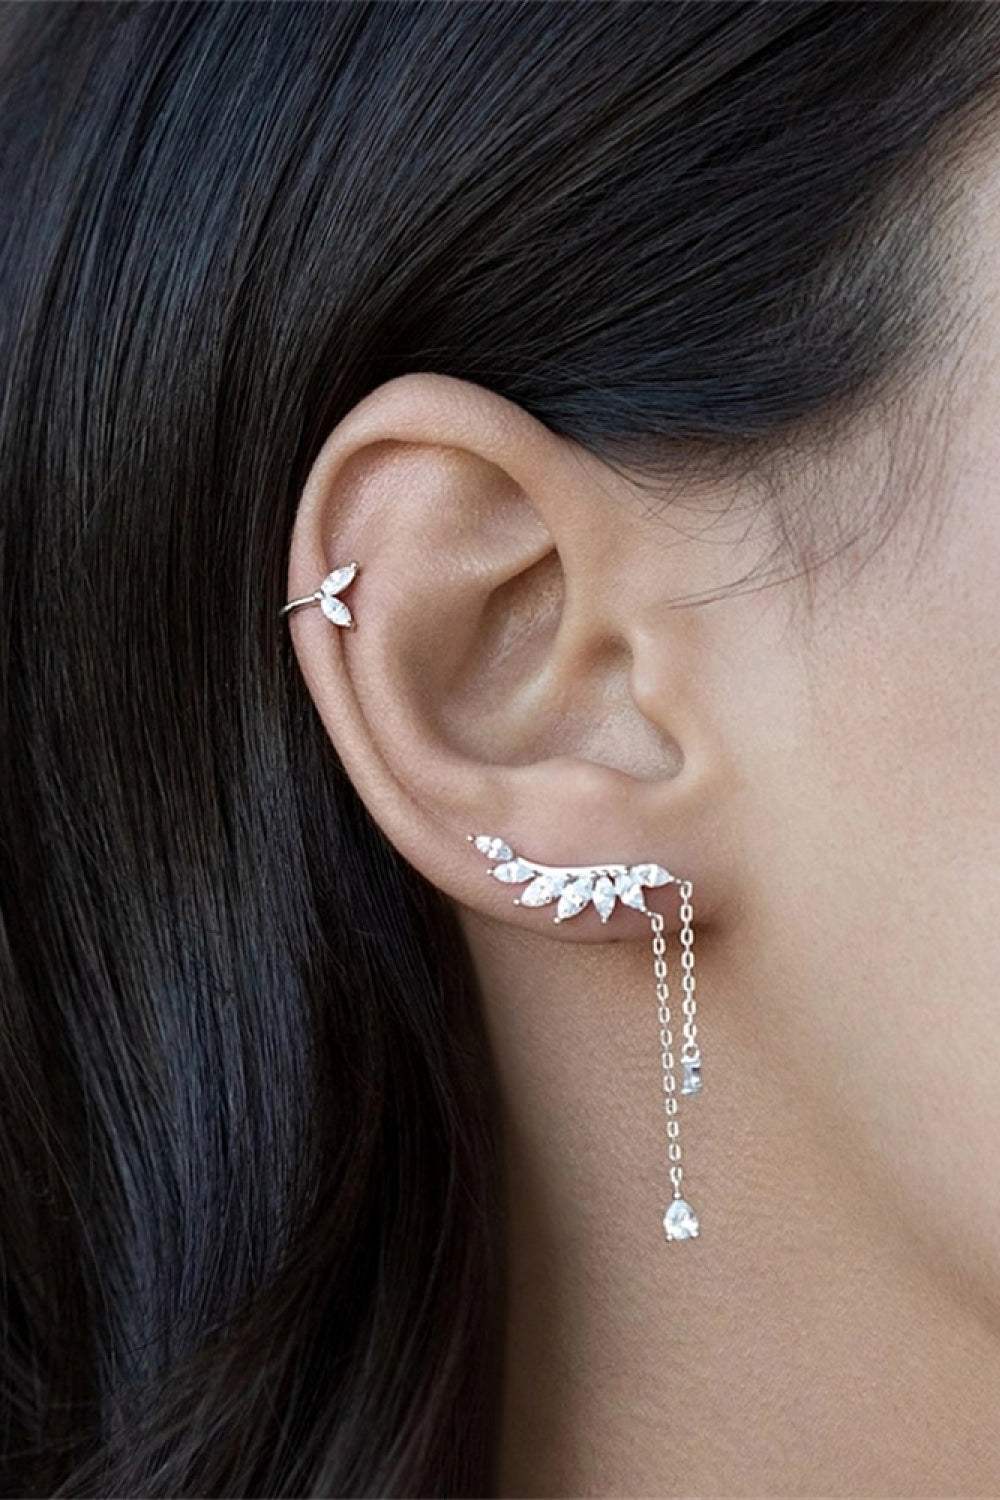 Platinum-Plated Crawl Earrings - Earrings - FITGGINS